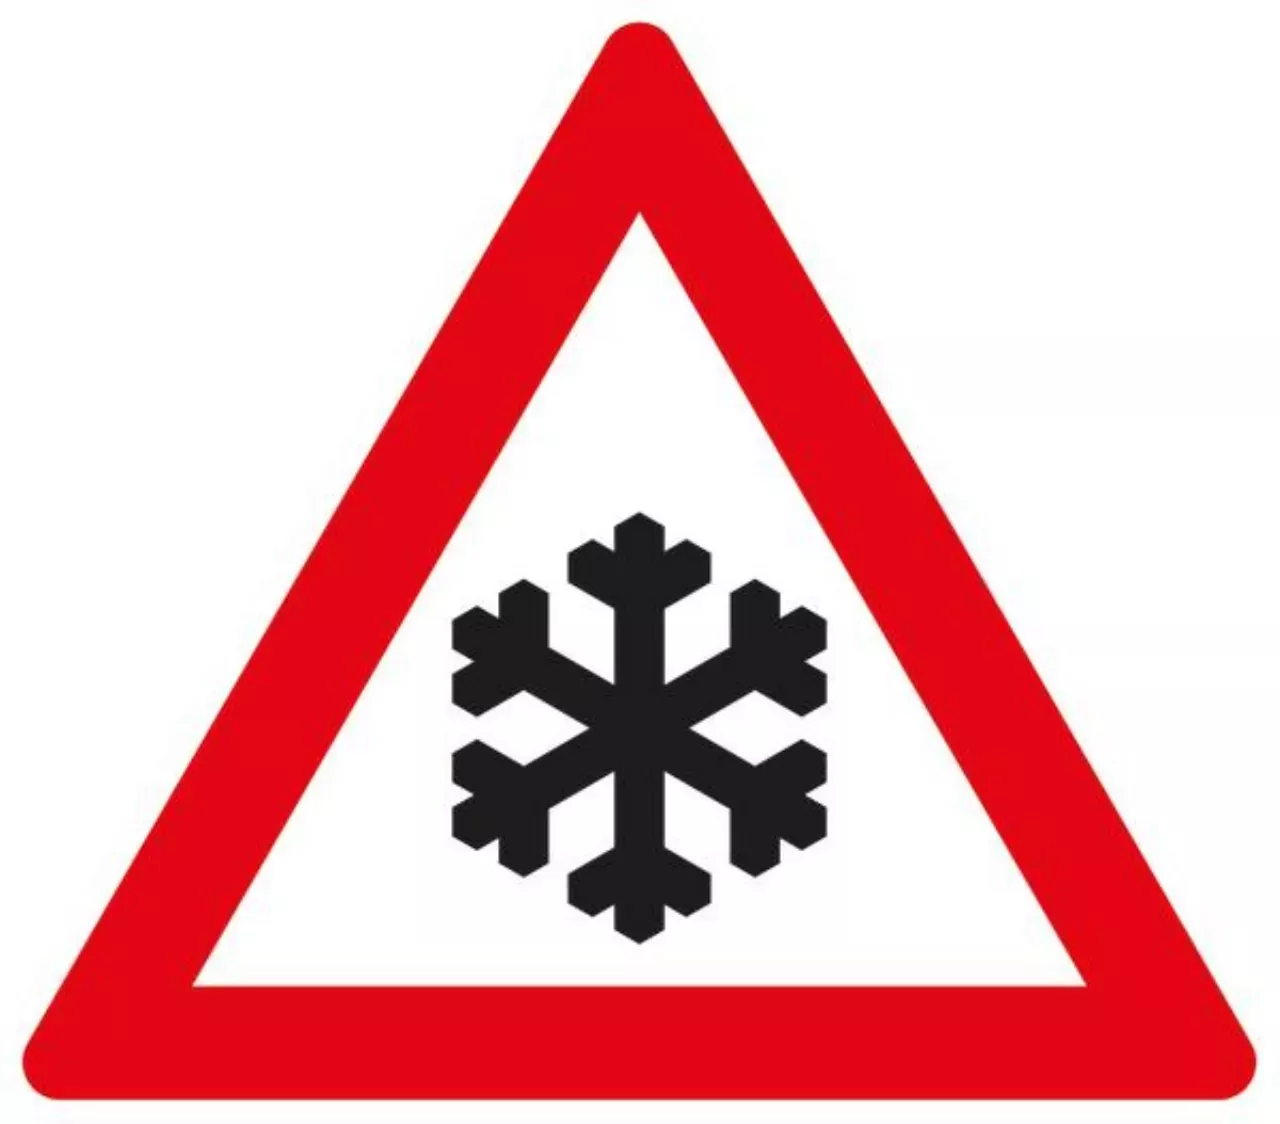 Gefahrenzeichen 100?199 VZ101-51 Schnee- oder Eisglätte - SL 630 2 mm RA1 Bild 2 von 4 für Verkehrszeichen